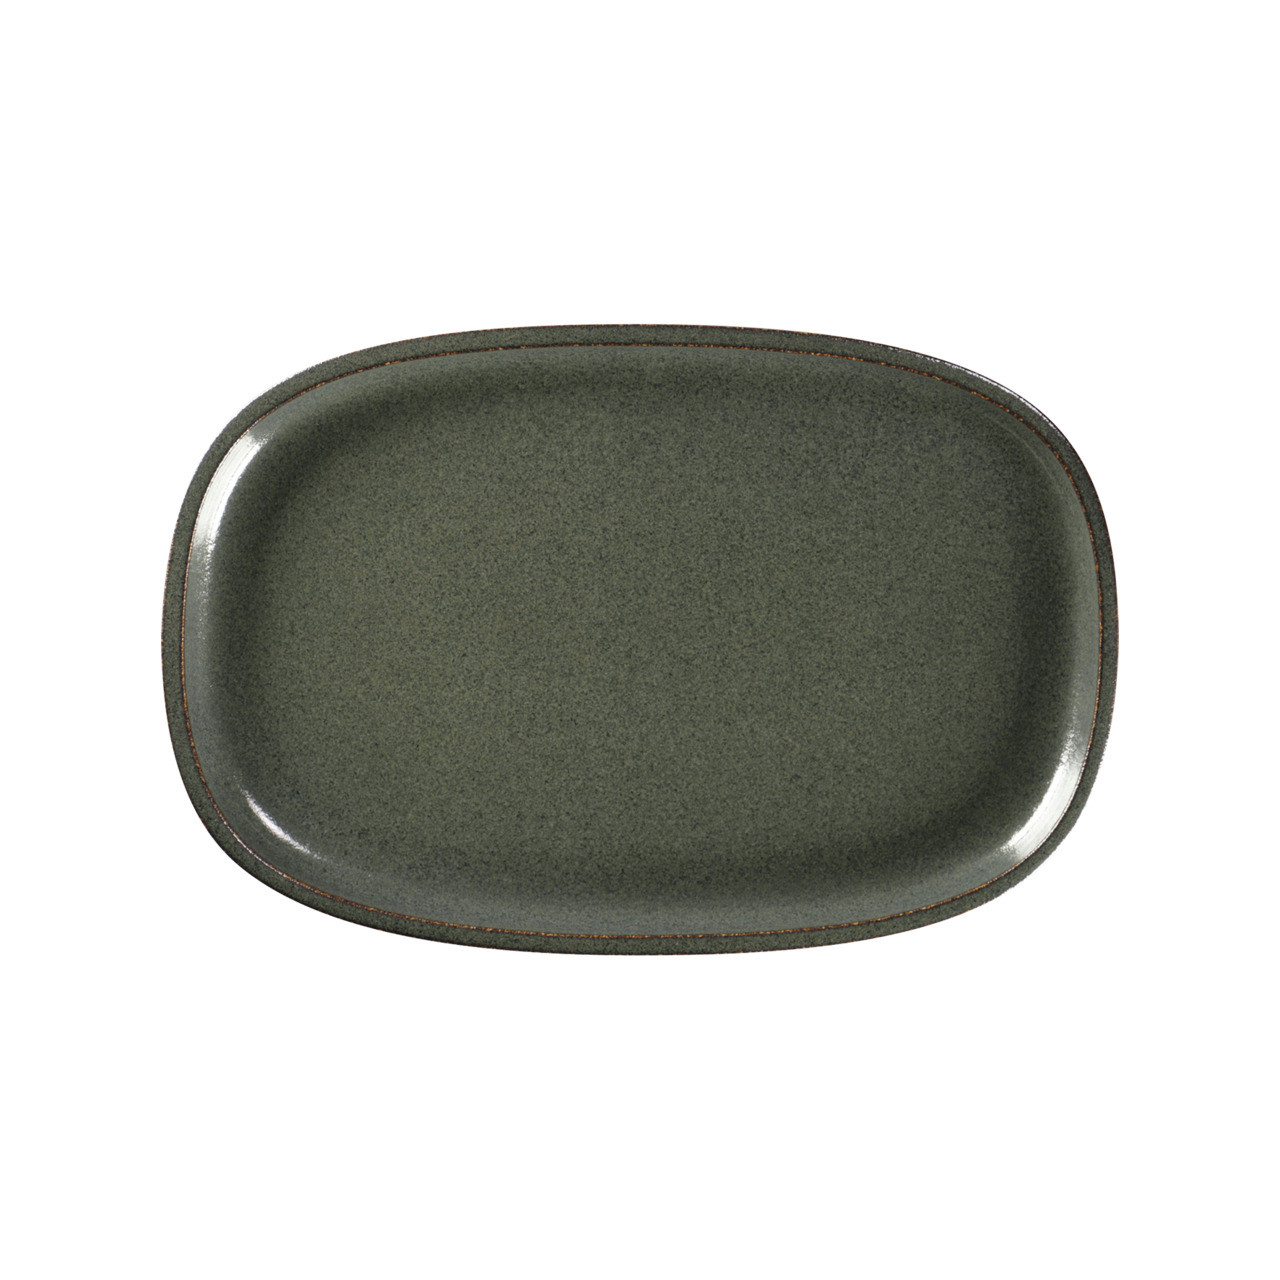 Ease, Platte oval flach 302 x 200 mm caldera green